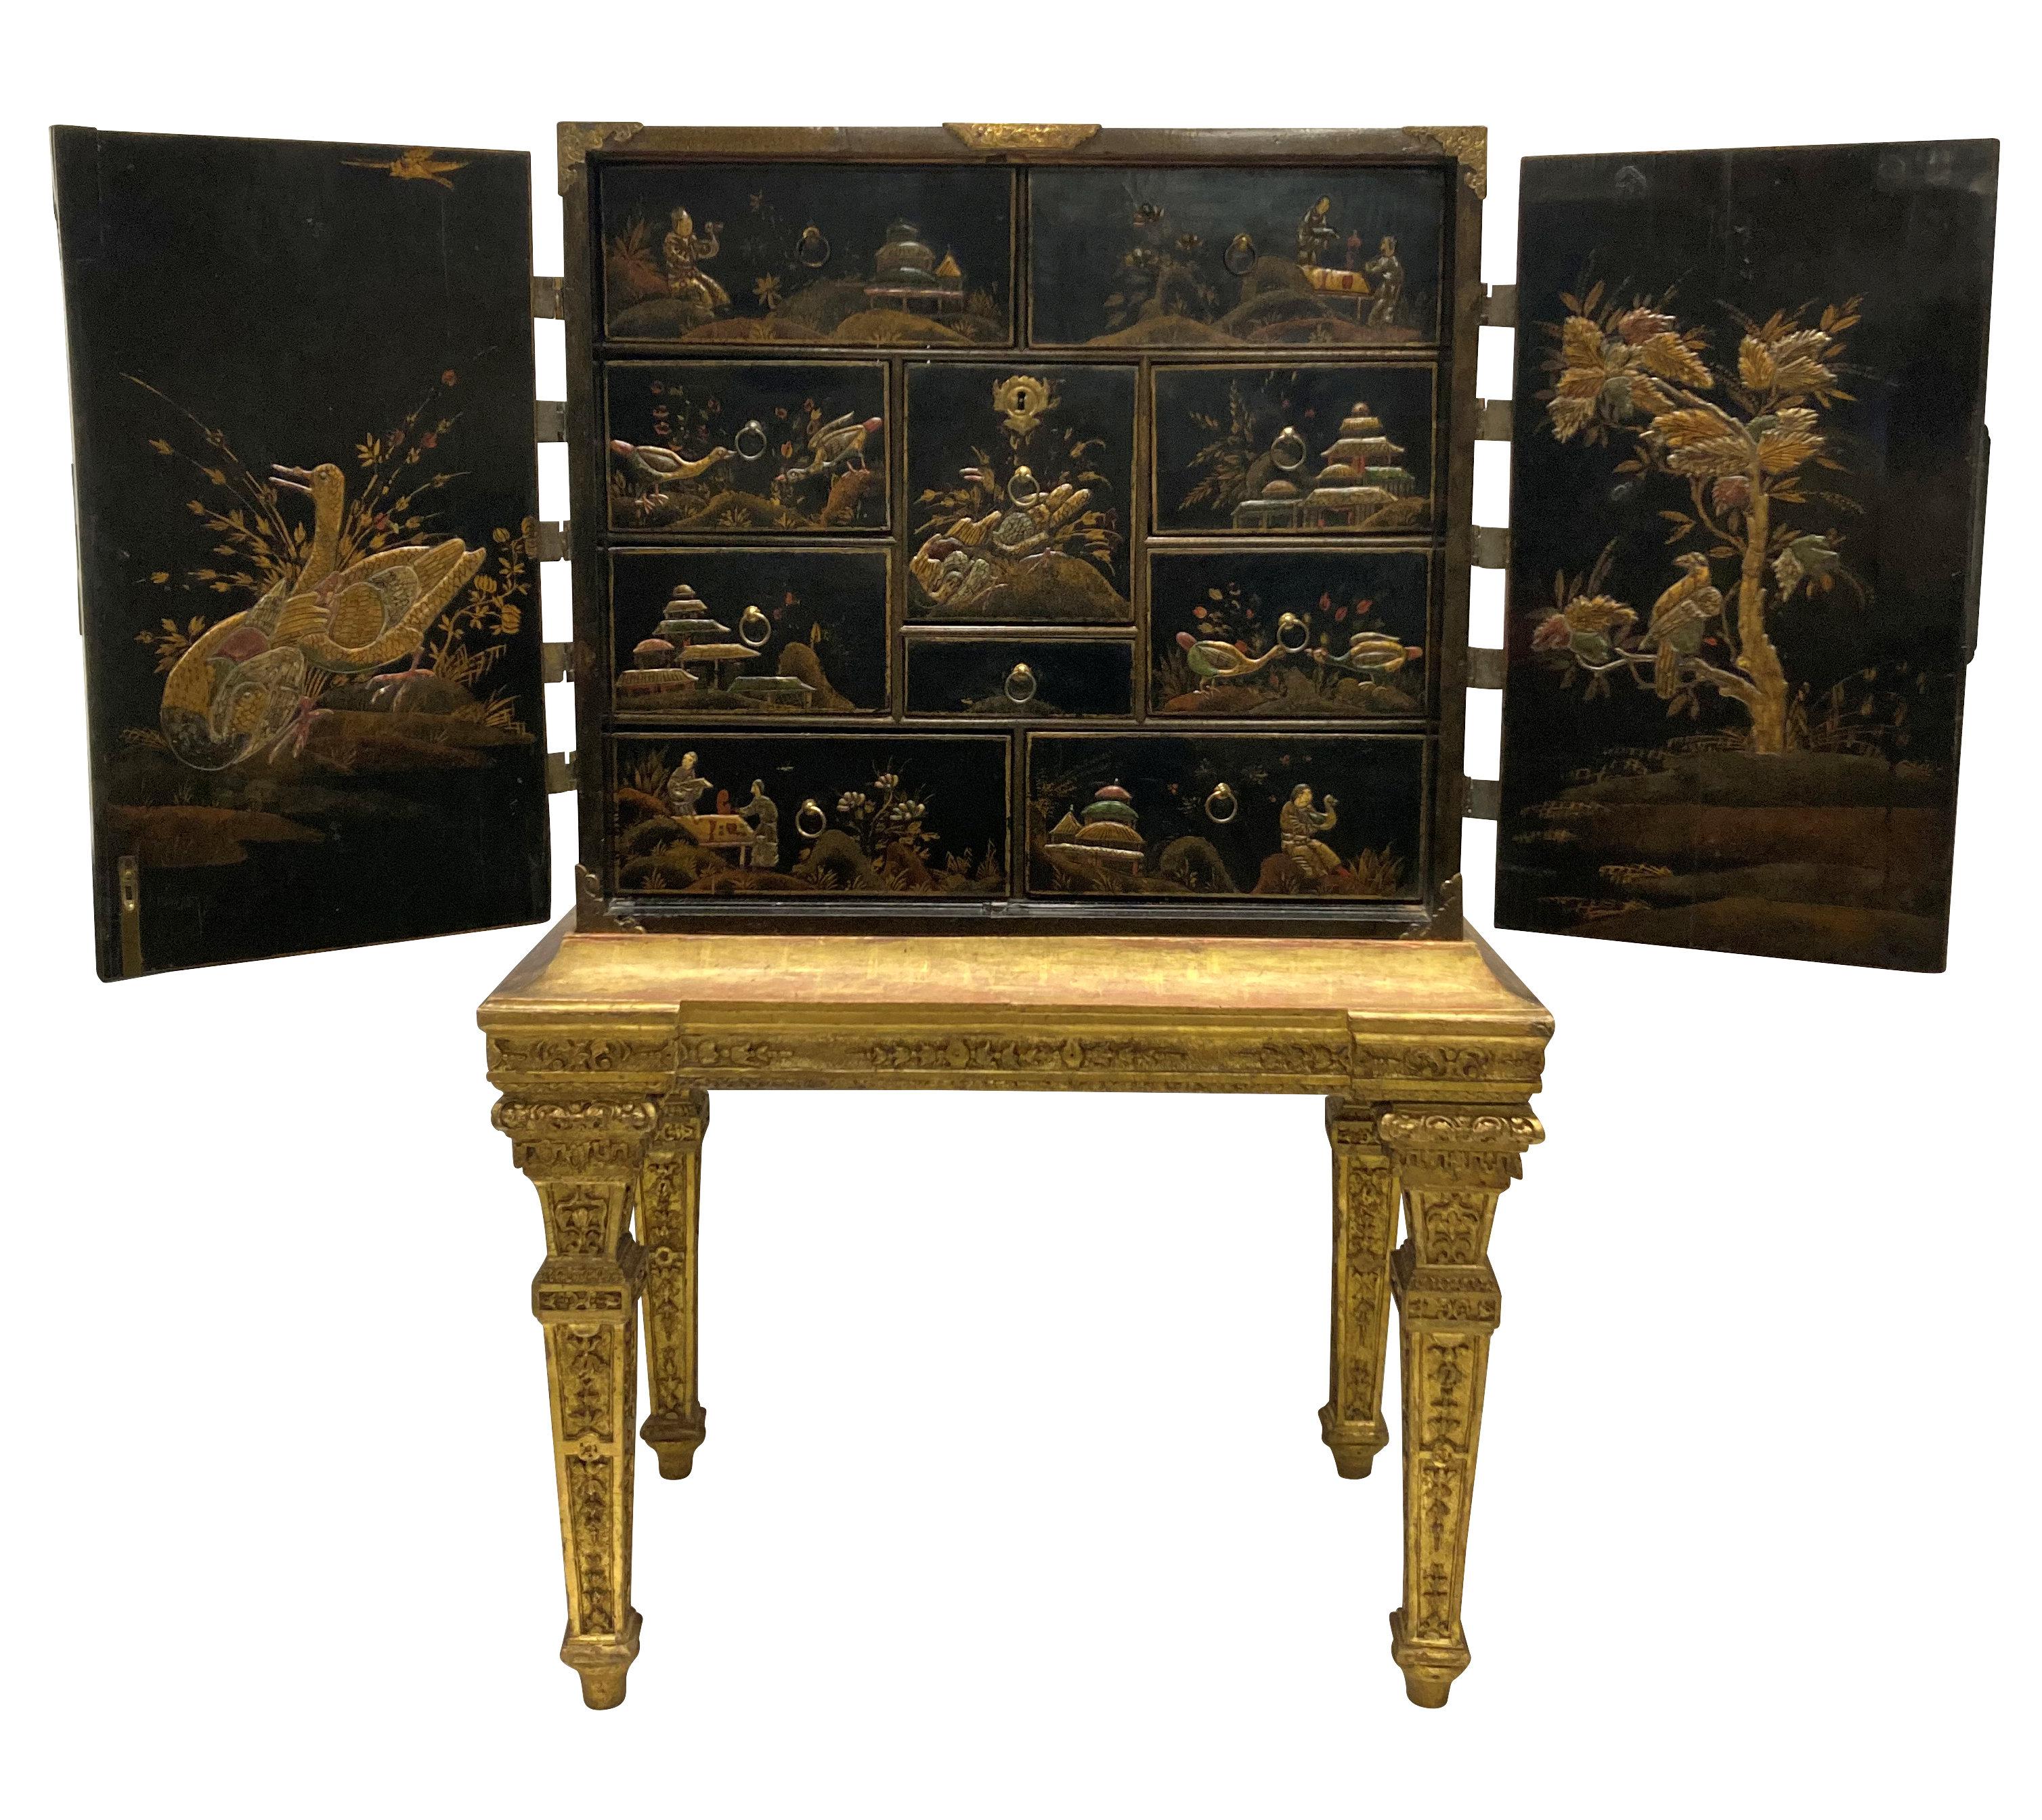 Cabinet de Chinoiserie William and Mary en tôle d'acier dorée et japonaise sur pied en bois doré. Le meuble représente des scènes de cour et des scènes rurales, avec des montures percées et gravées, une plaque d'écusson élaborée et une serrure et